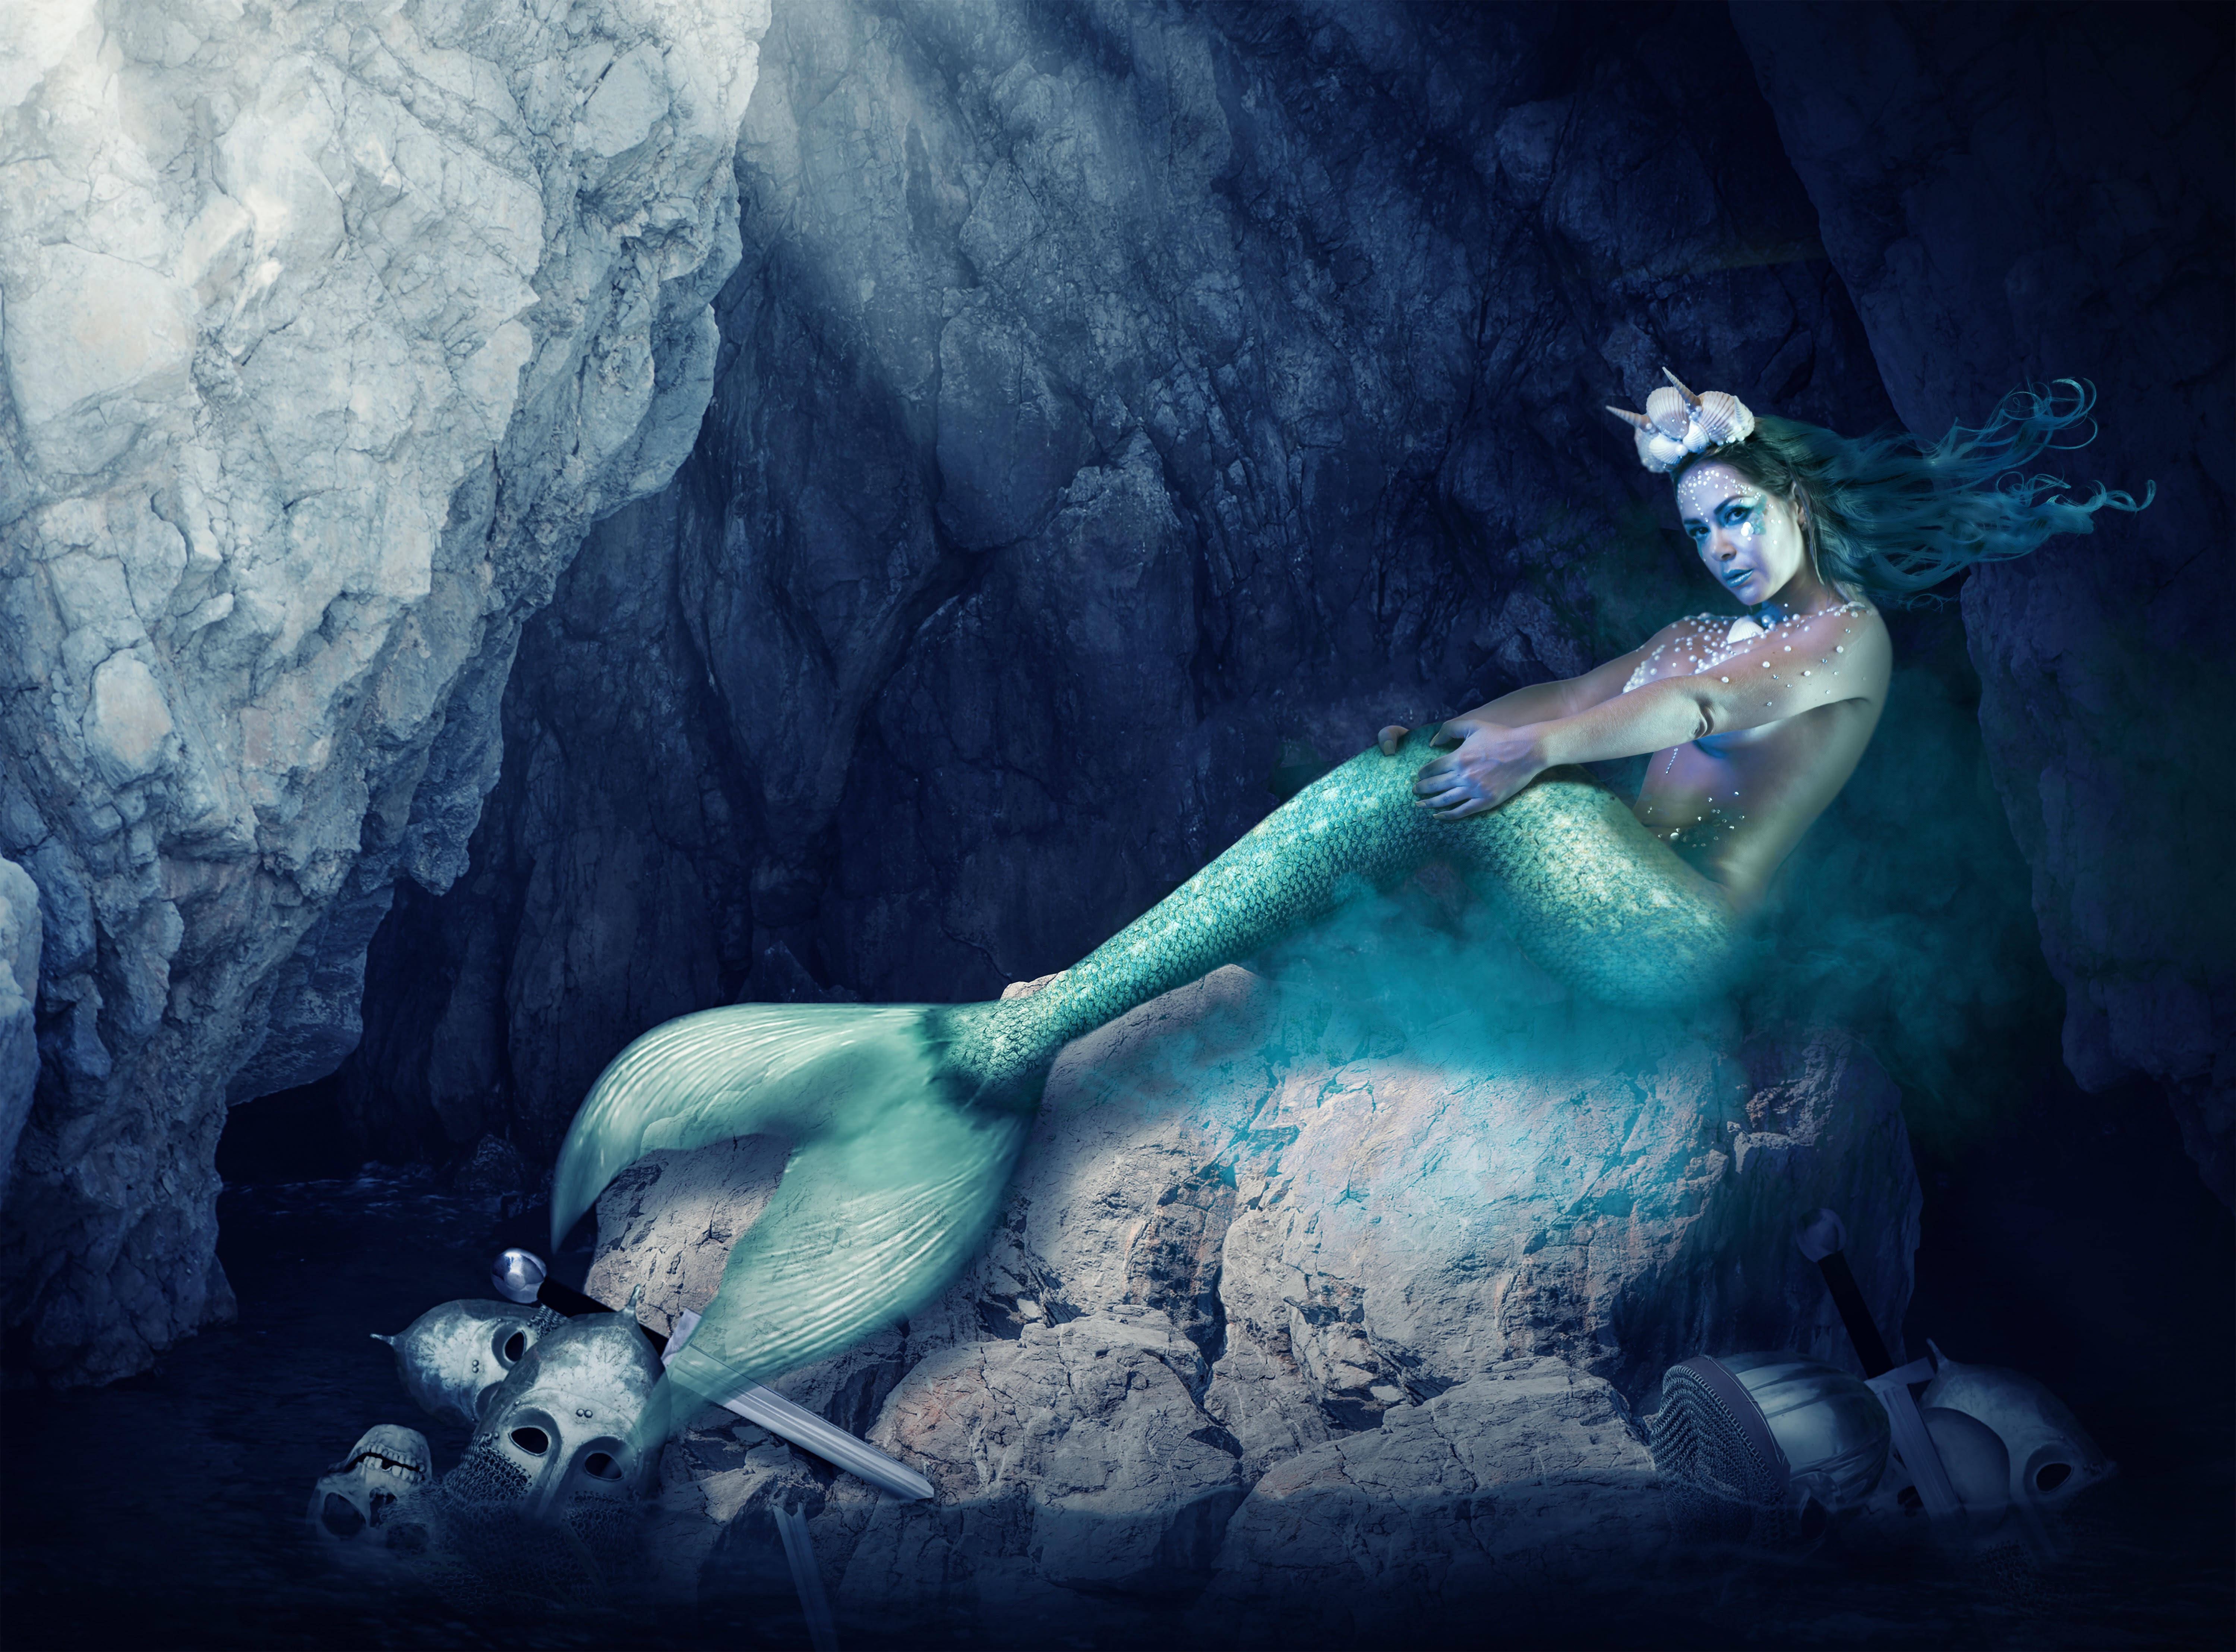 Gil Jung aparece deslumbrante de sereia em ensaio fotográfico. Foto: SuperCinema/R2assessoria